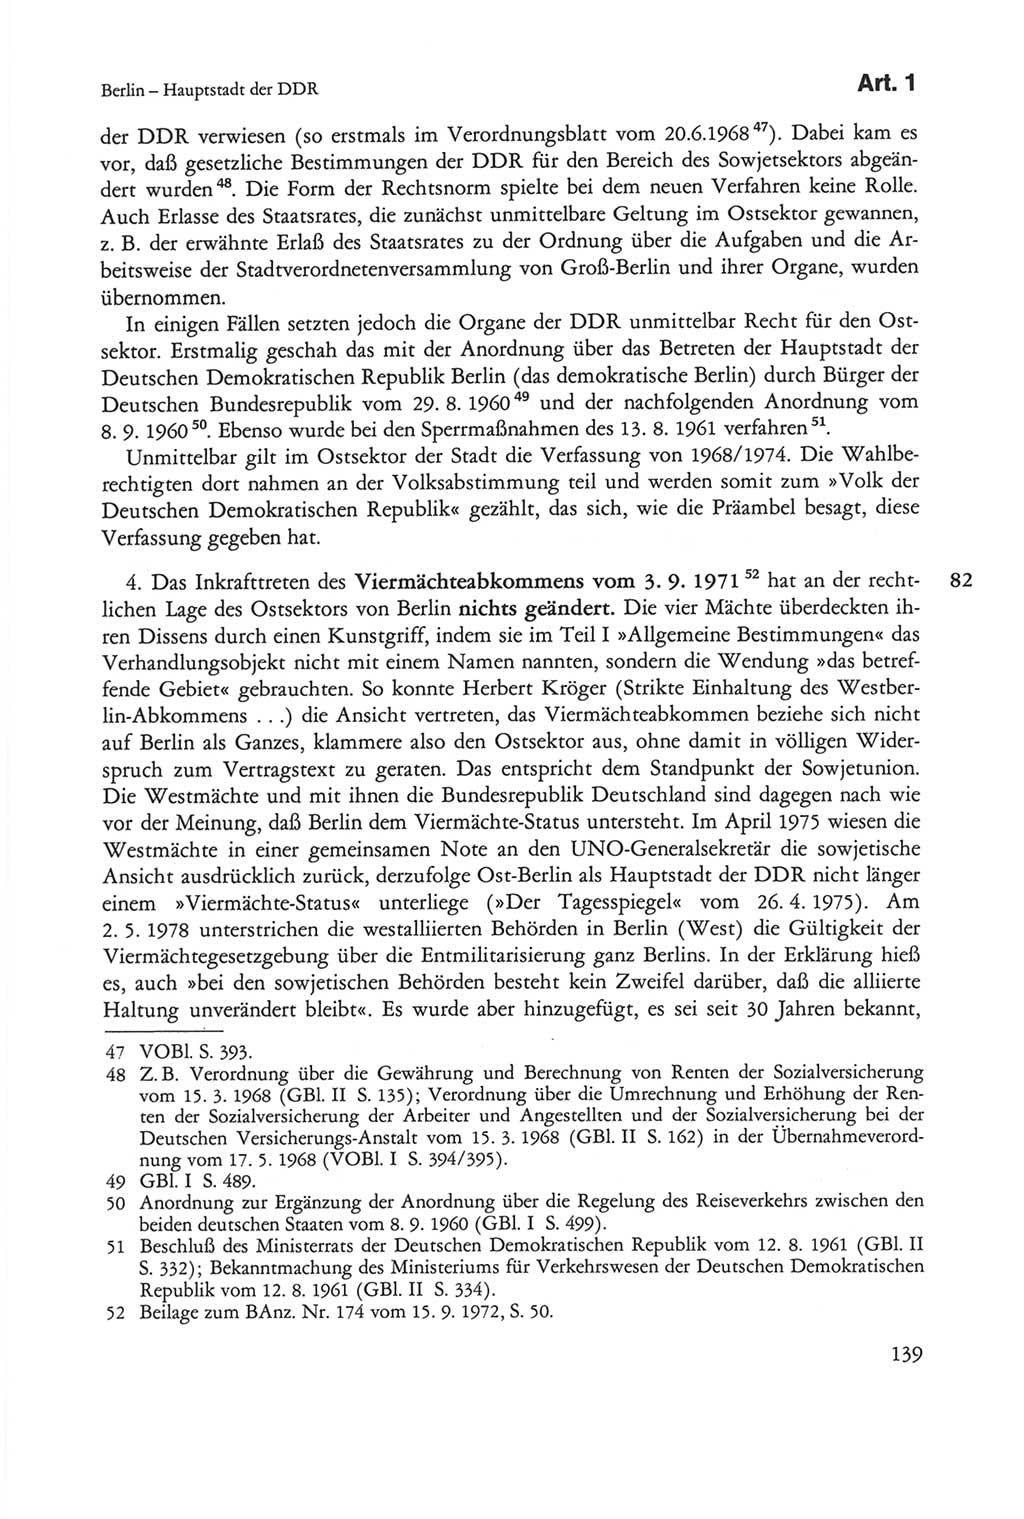 Die sozialistische Verfassung der Deutschen Demokratischen Republik (DDR), Kommentar mit einem Nachtrag 1997, Seite 139 (Soz. Verf. DDR Komm. Nachtr. 1997, S. 139)